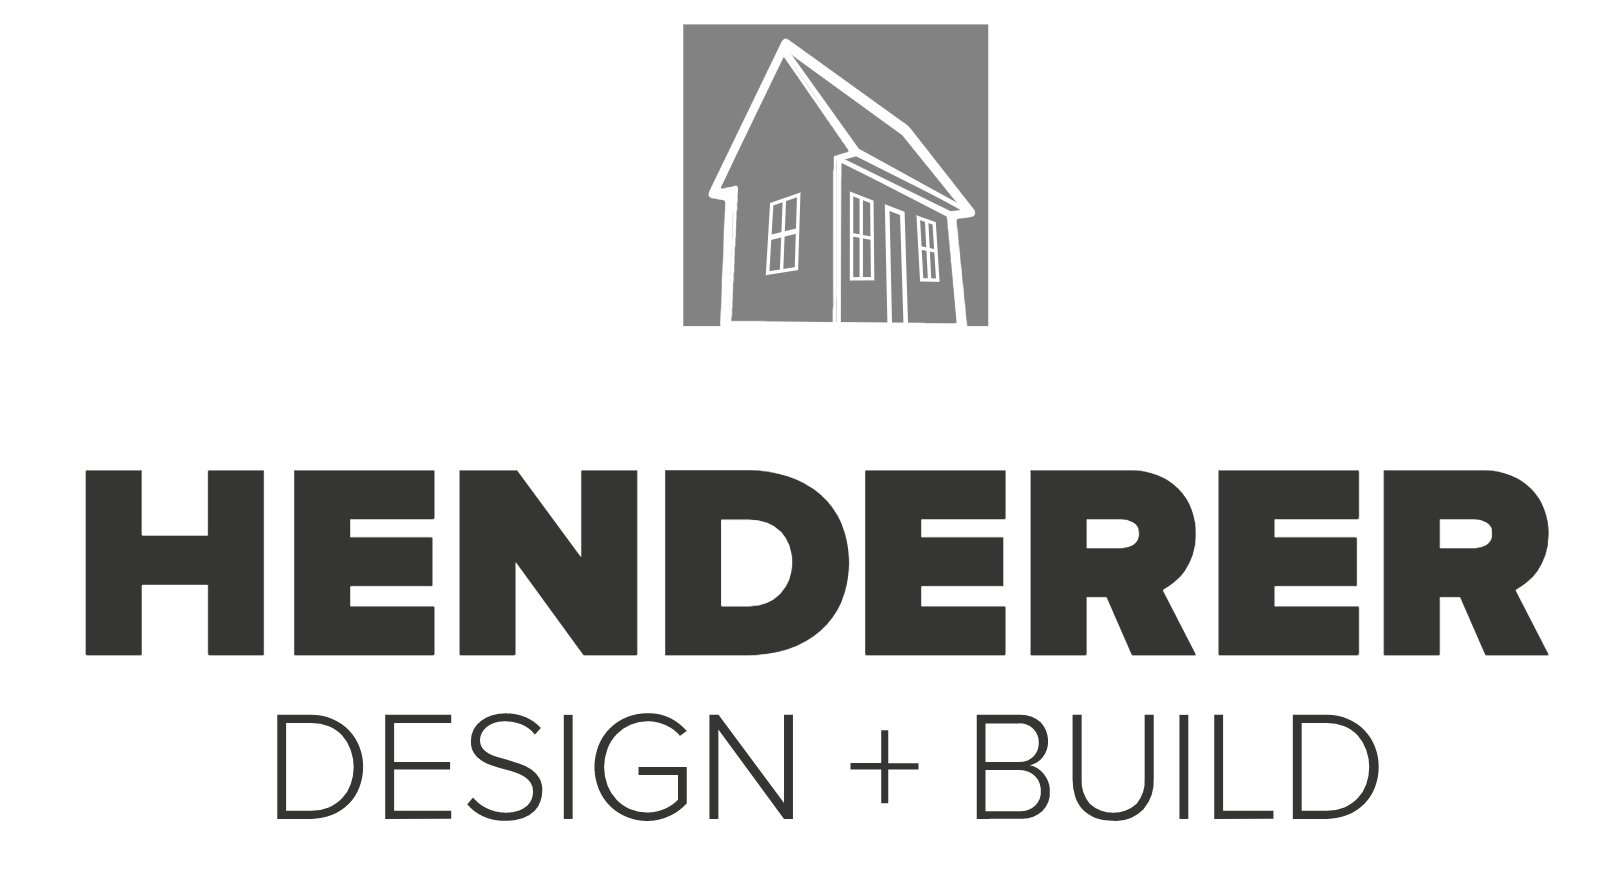 Contact - Henderer Design + Build